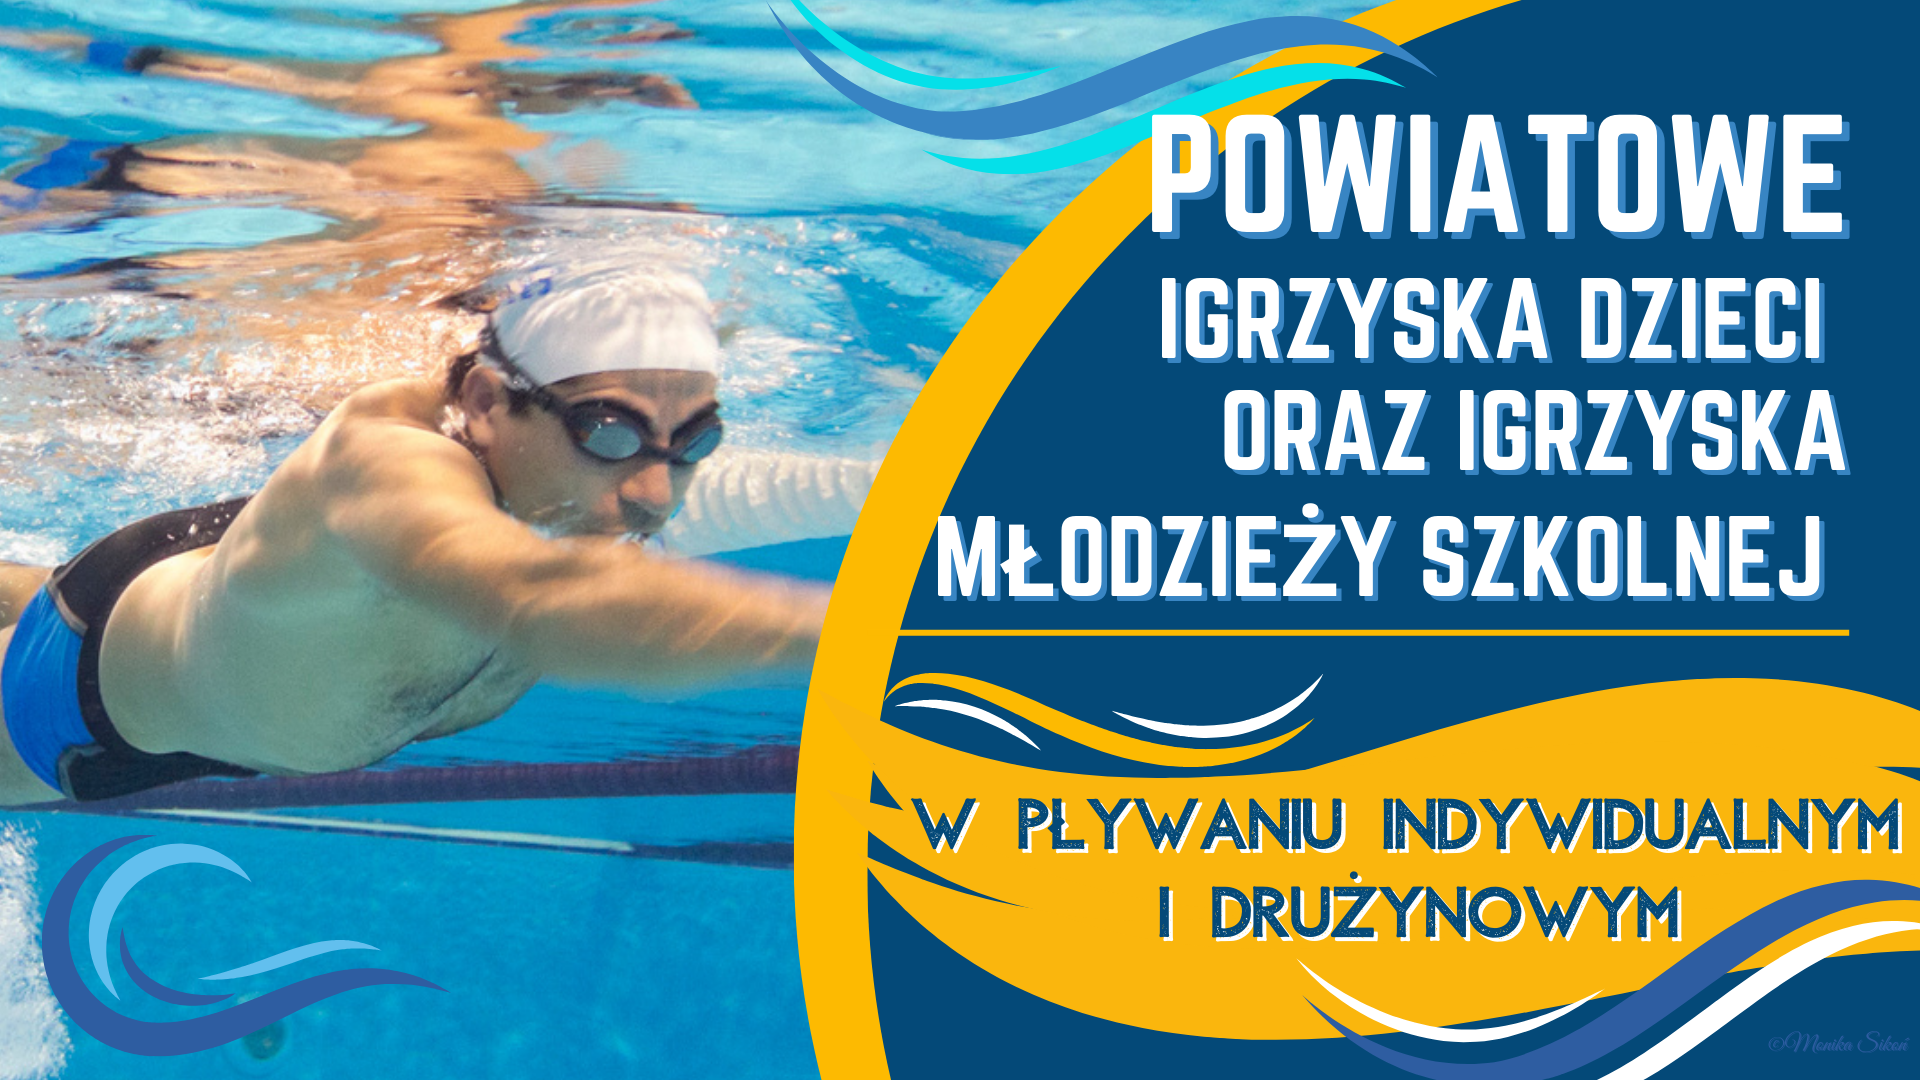 Powiatowe Igrzyska Dzieci oraz Igrzyska Młodzieży Szkolnej w pływaniu indywidualnym i drużynowym.